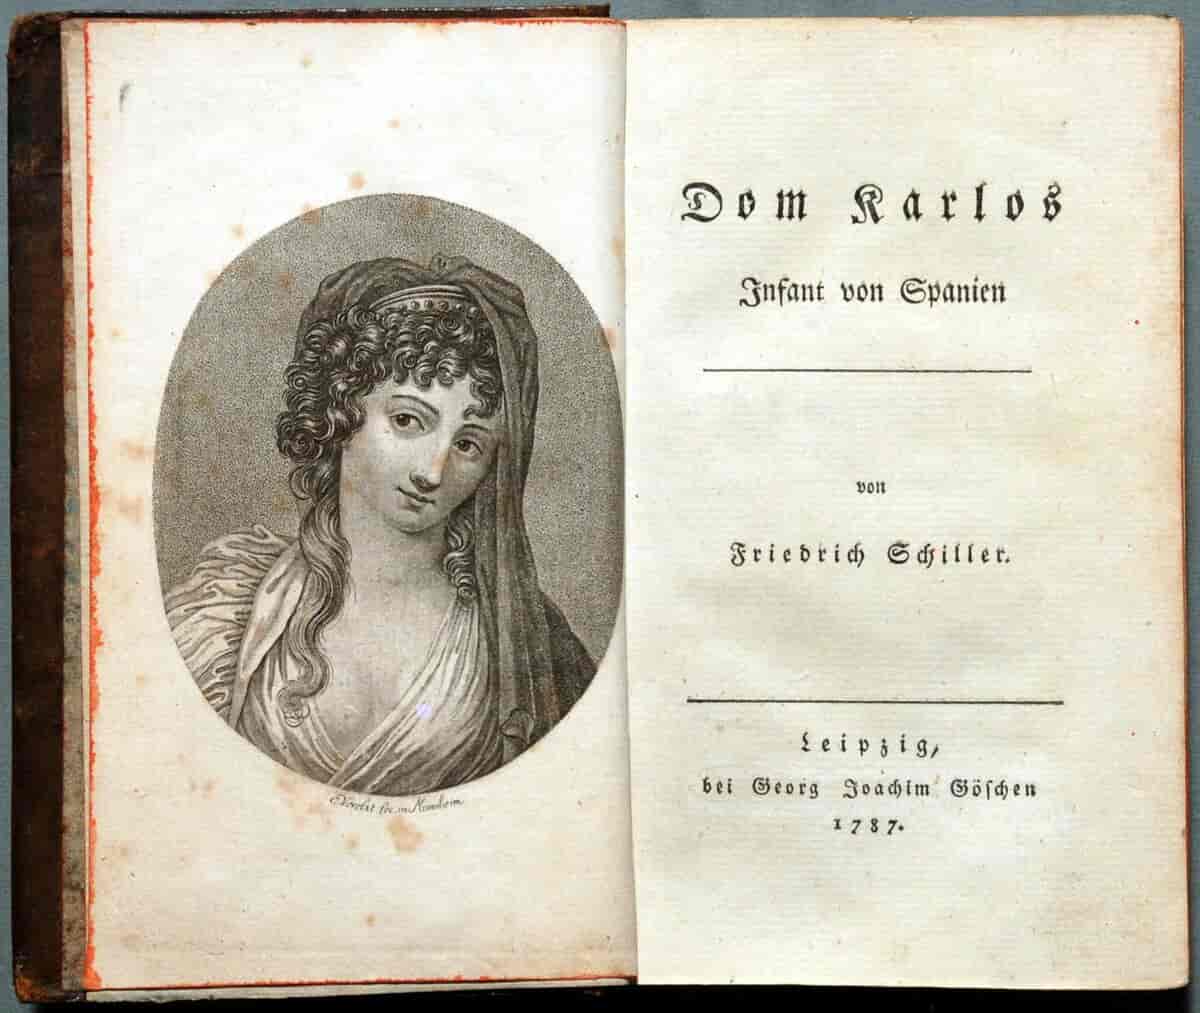 Førsteutgaven av "Don Carlos", illustrert av Egid Verhelst der Jüngere (1733-1804)